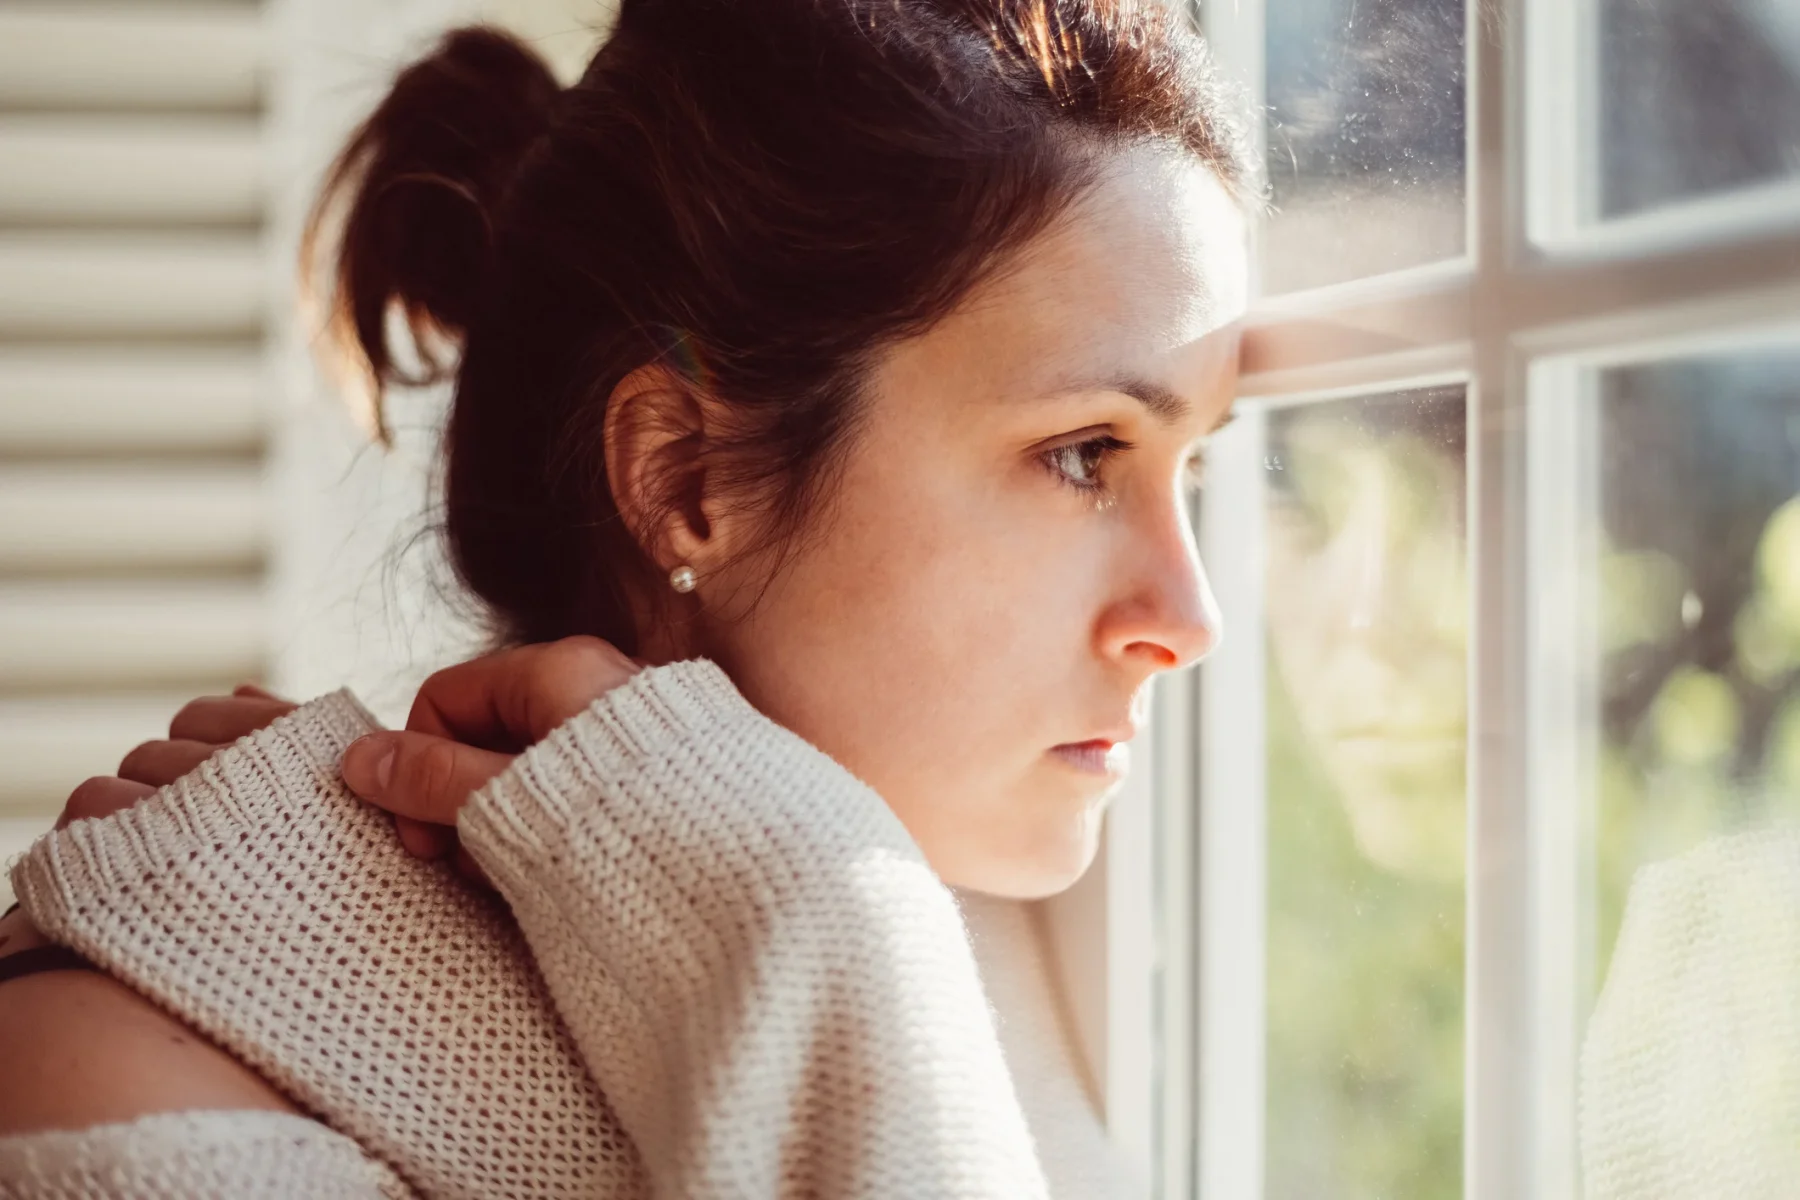 Ατοπική δερματίτιδα στρες: Στενή σχέση ανάμεσα στο έκζεμα, το άγχος και την κατάθλιψη